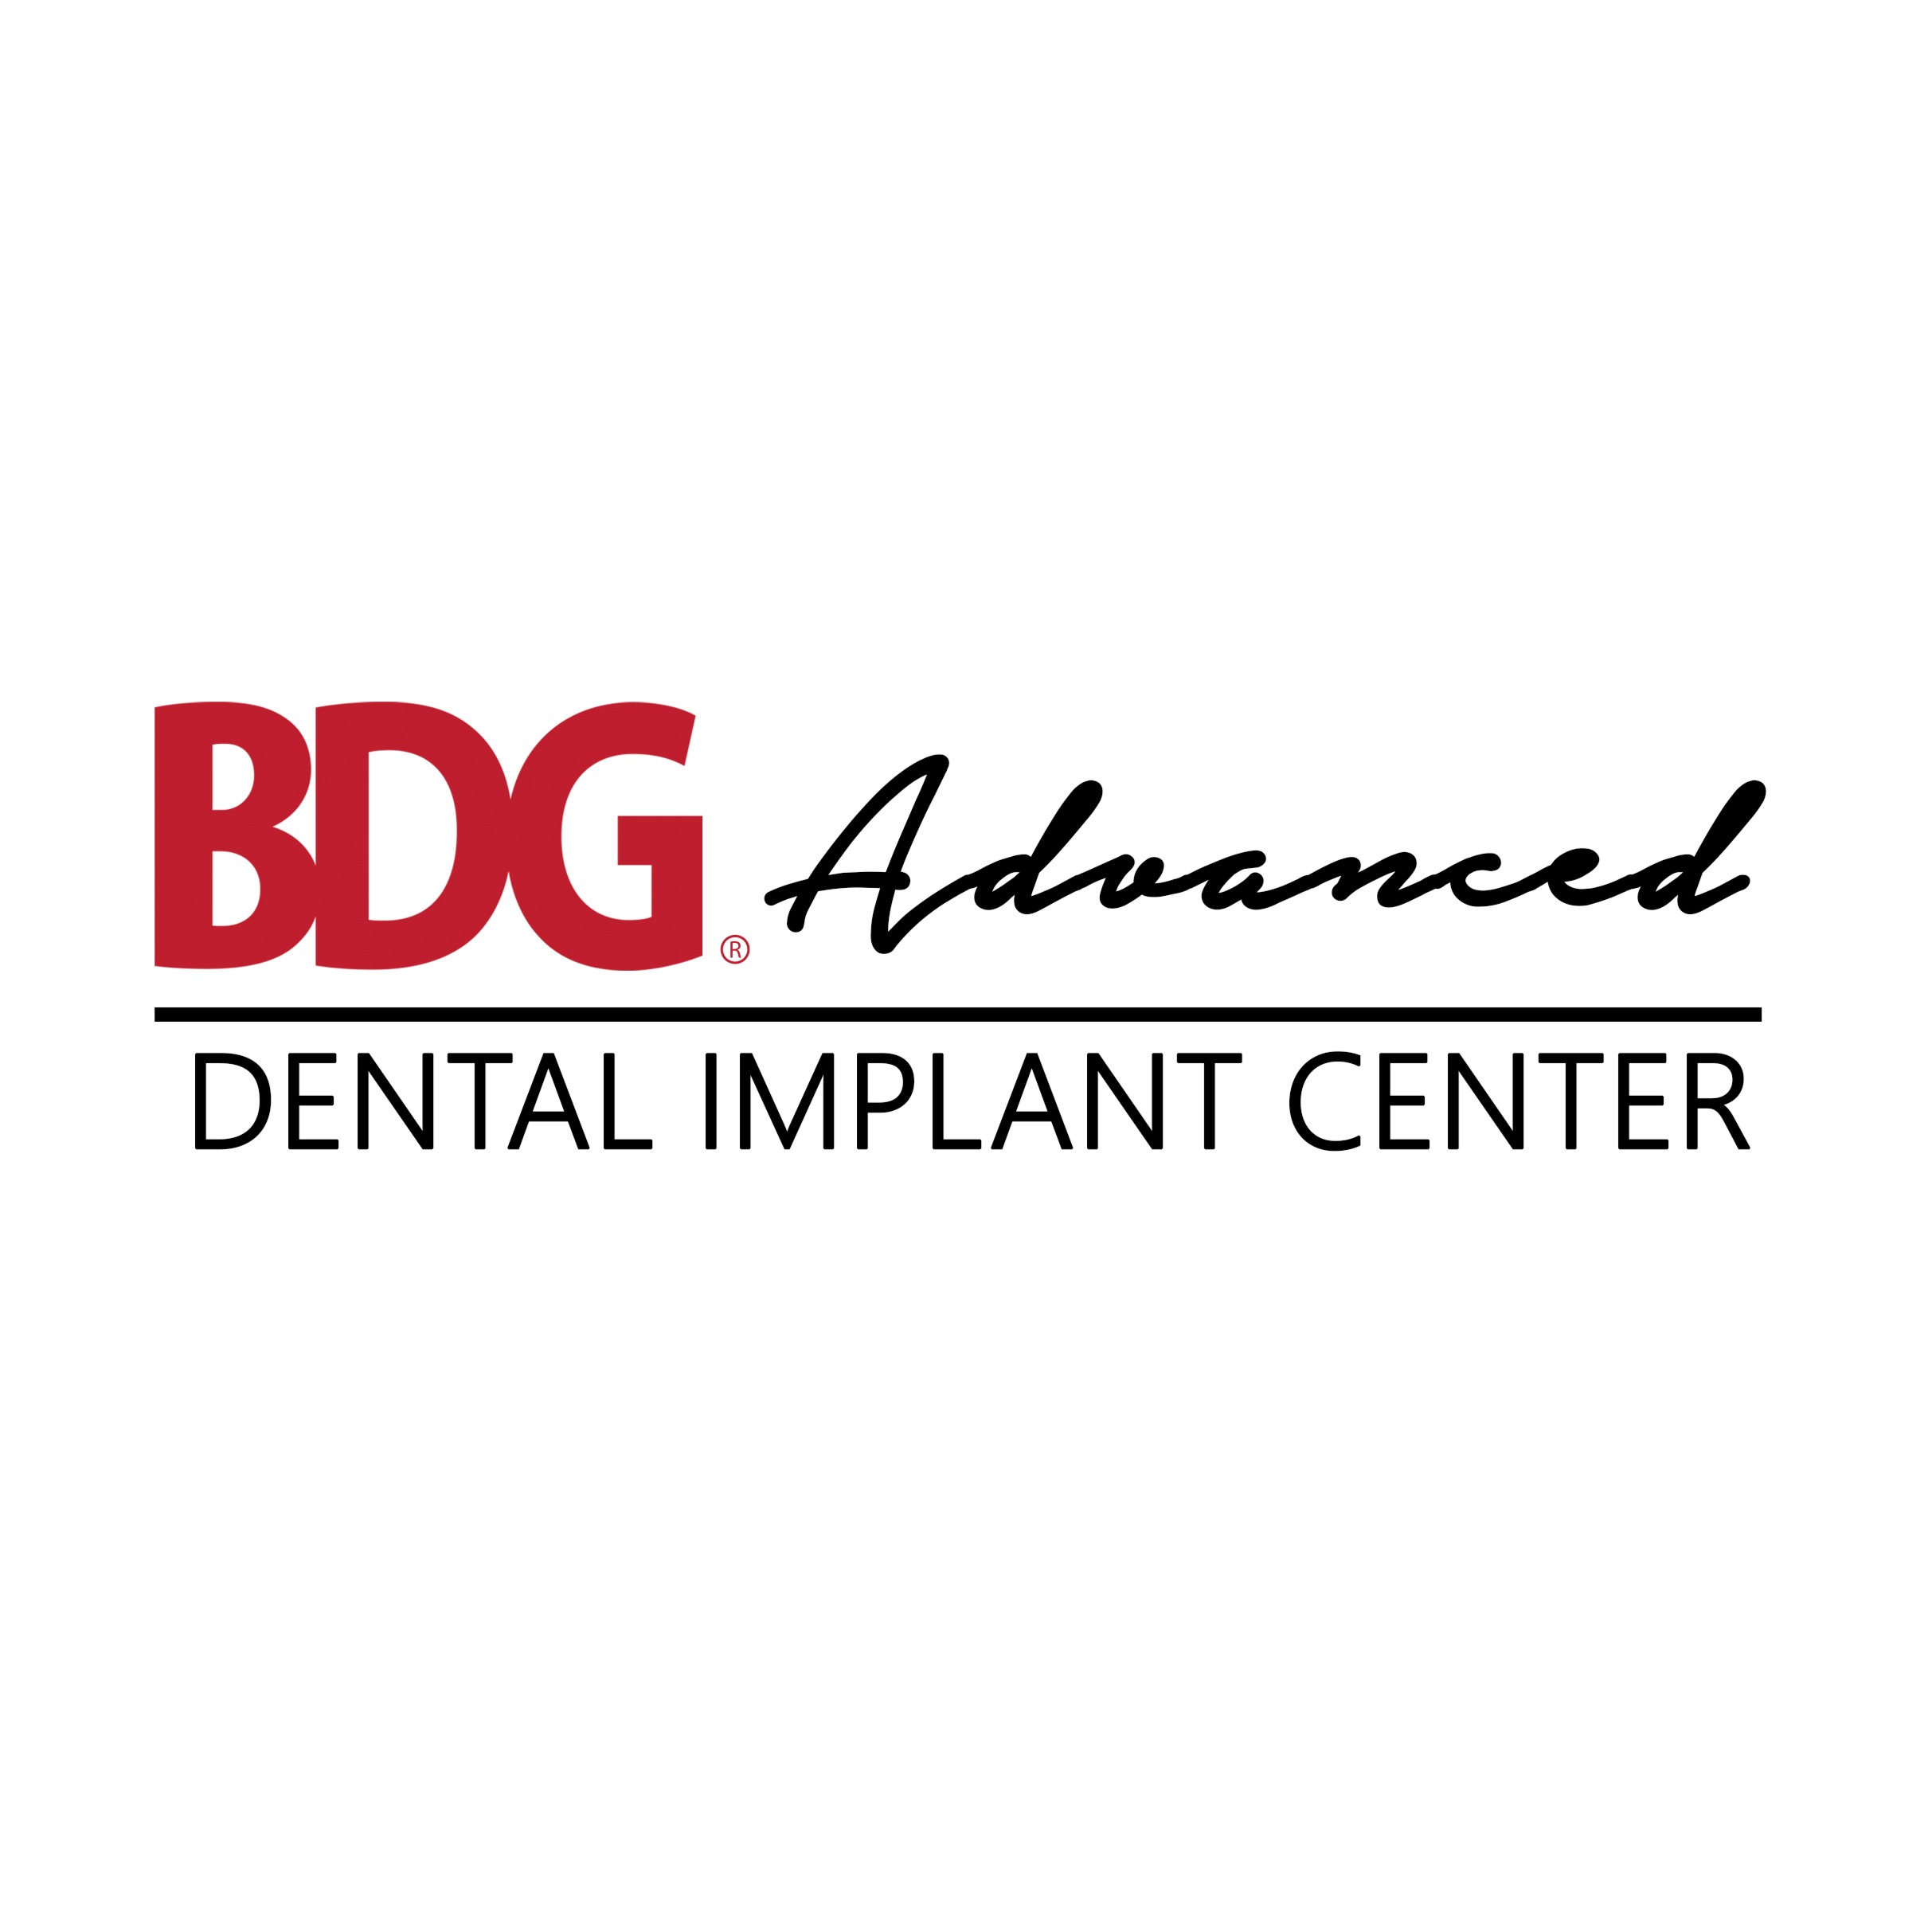 BDG Advanced Dental Implant Center